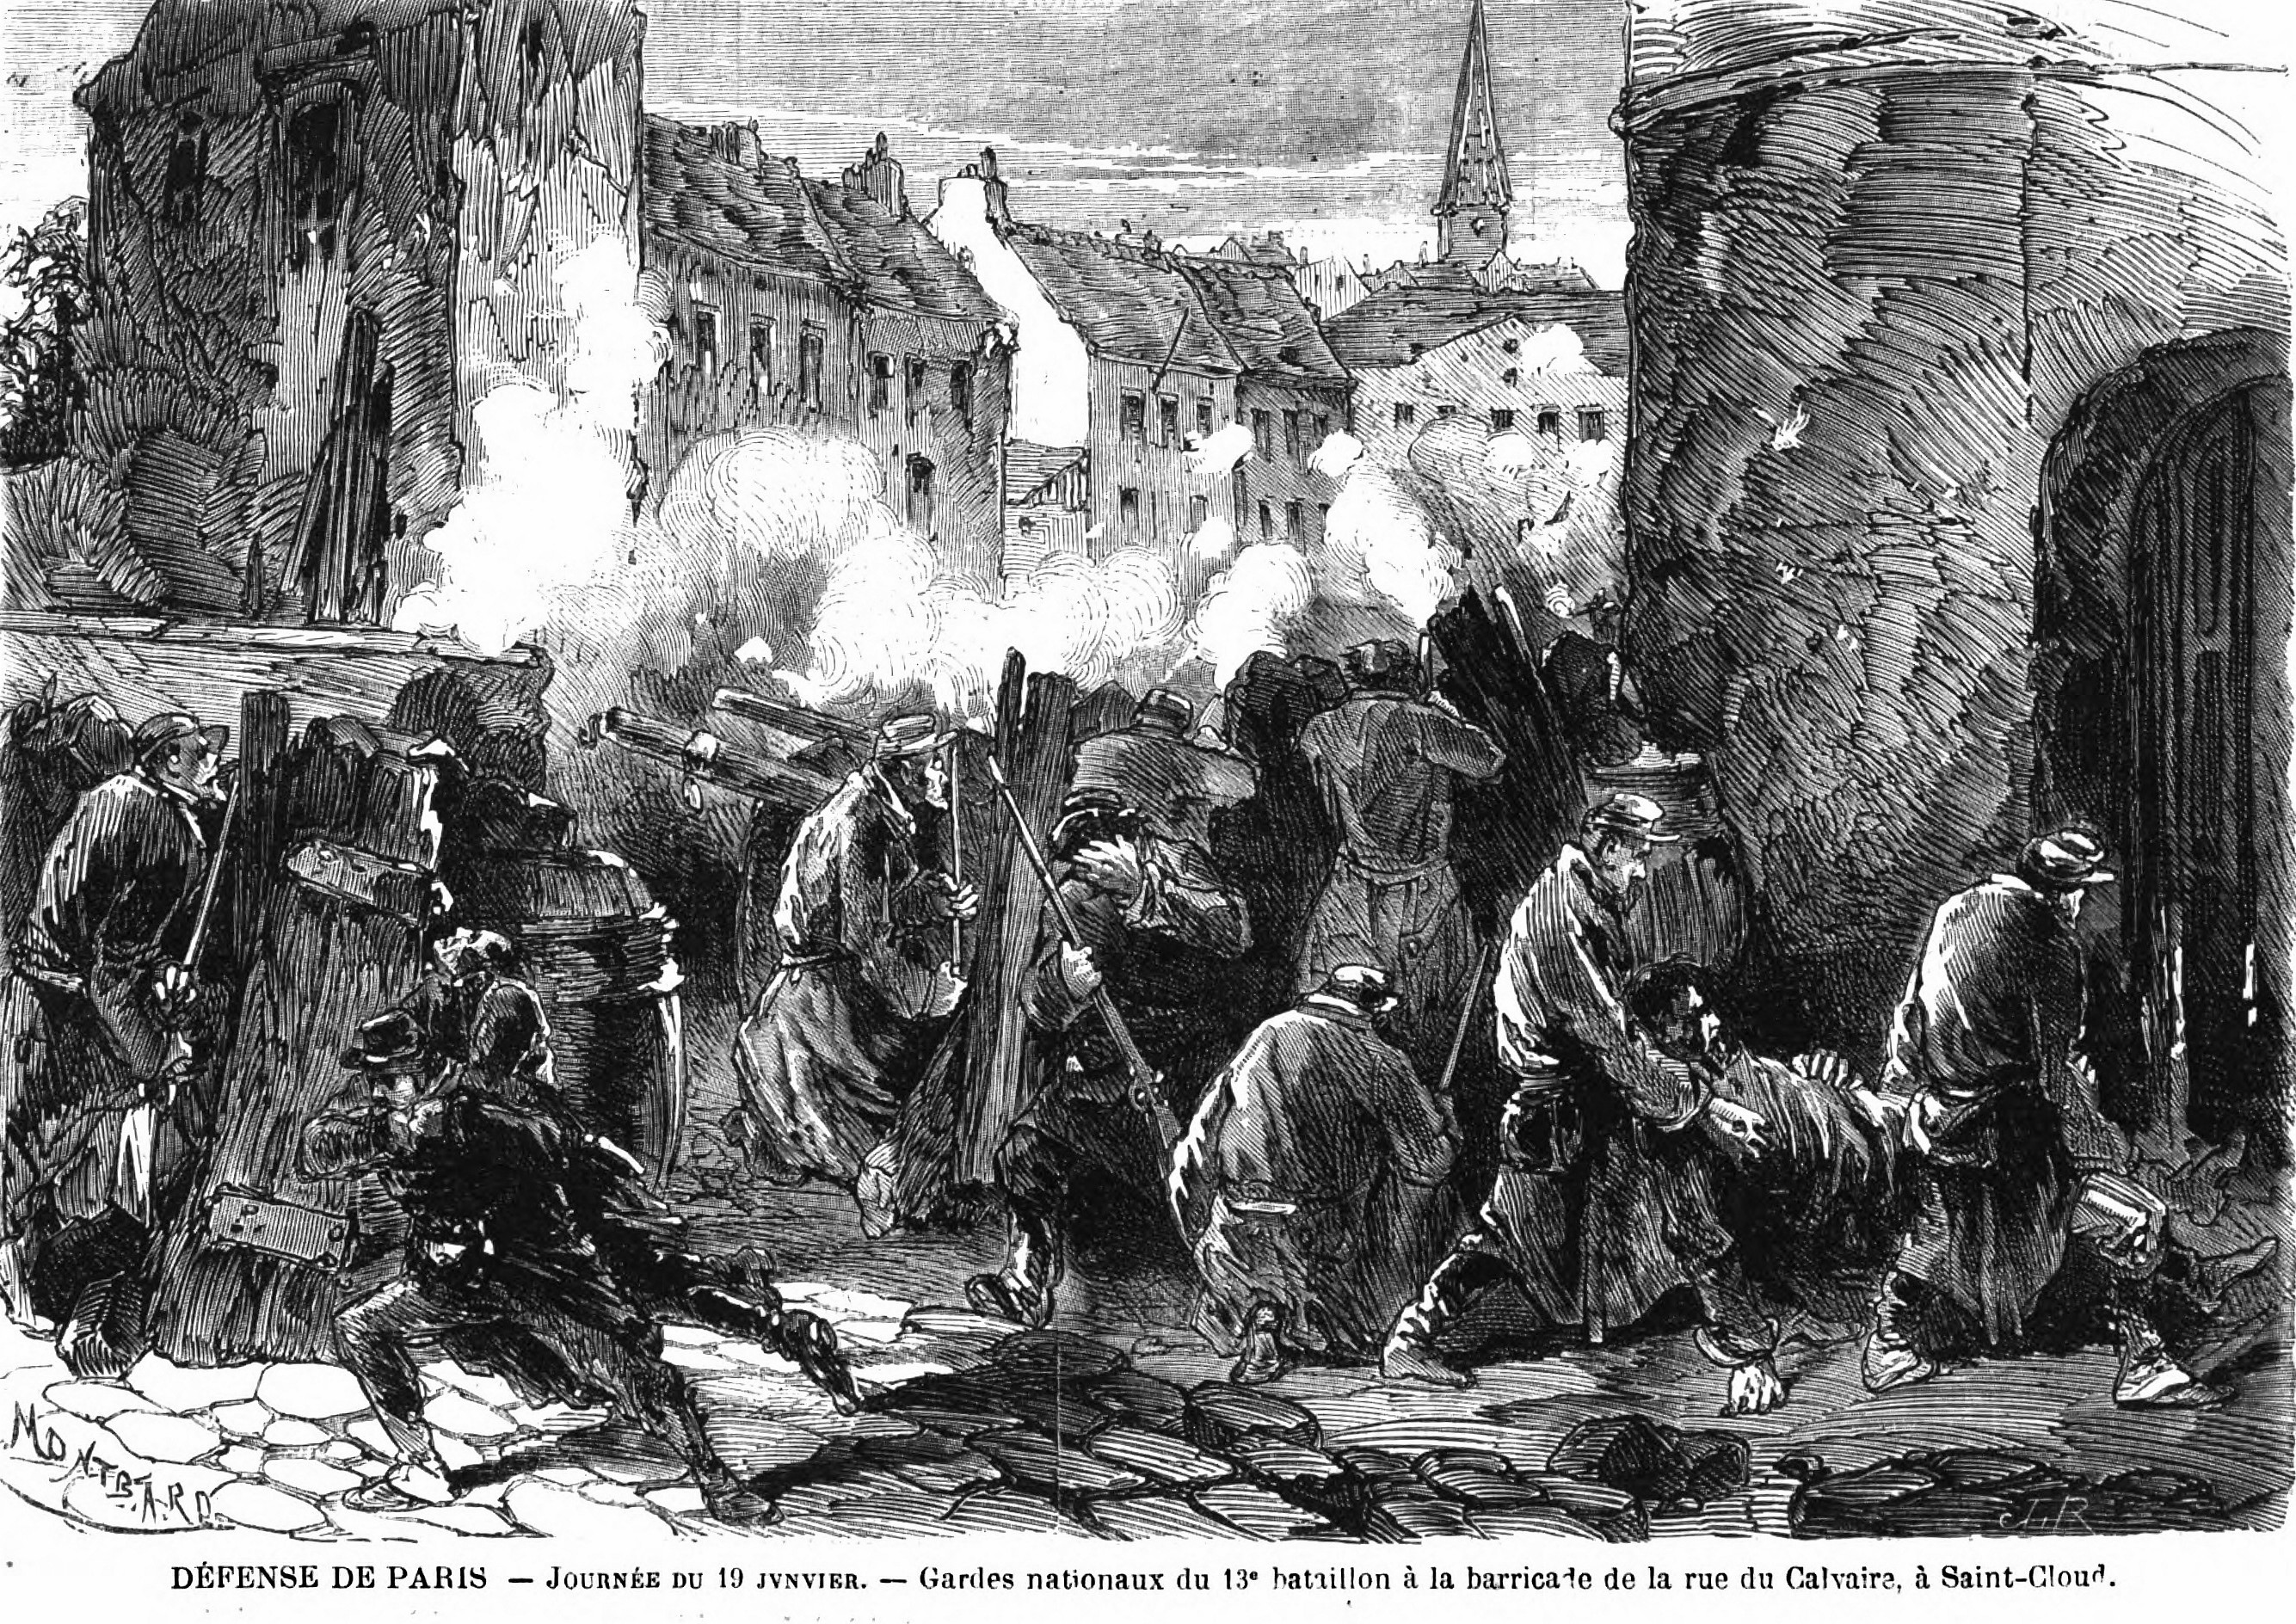 Combats des Gardes natiaunaux à Saint Cloud le 17 janvier 1871 (Source : L'Illustration - Journal Universel du 28 janvier 1871)